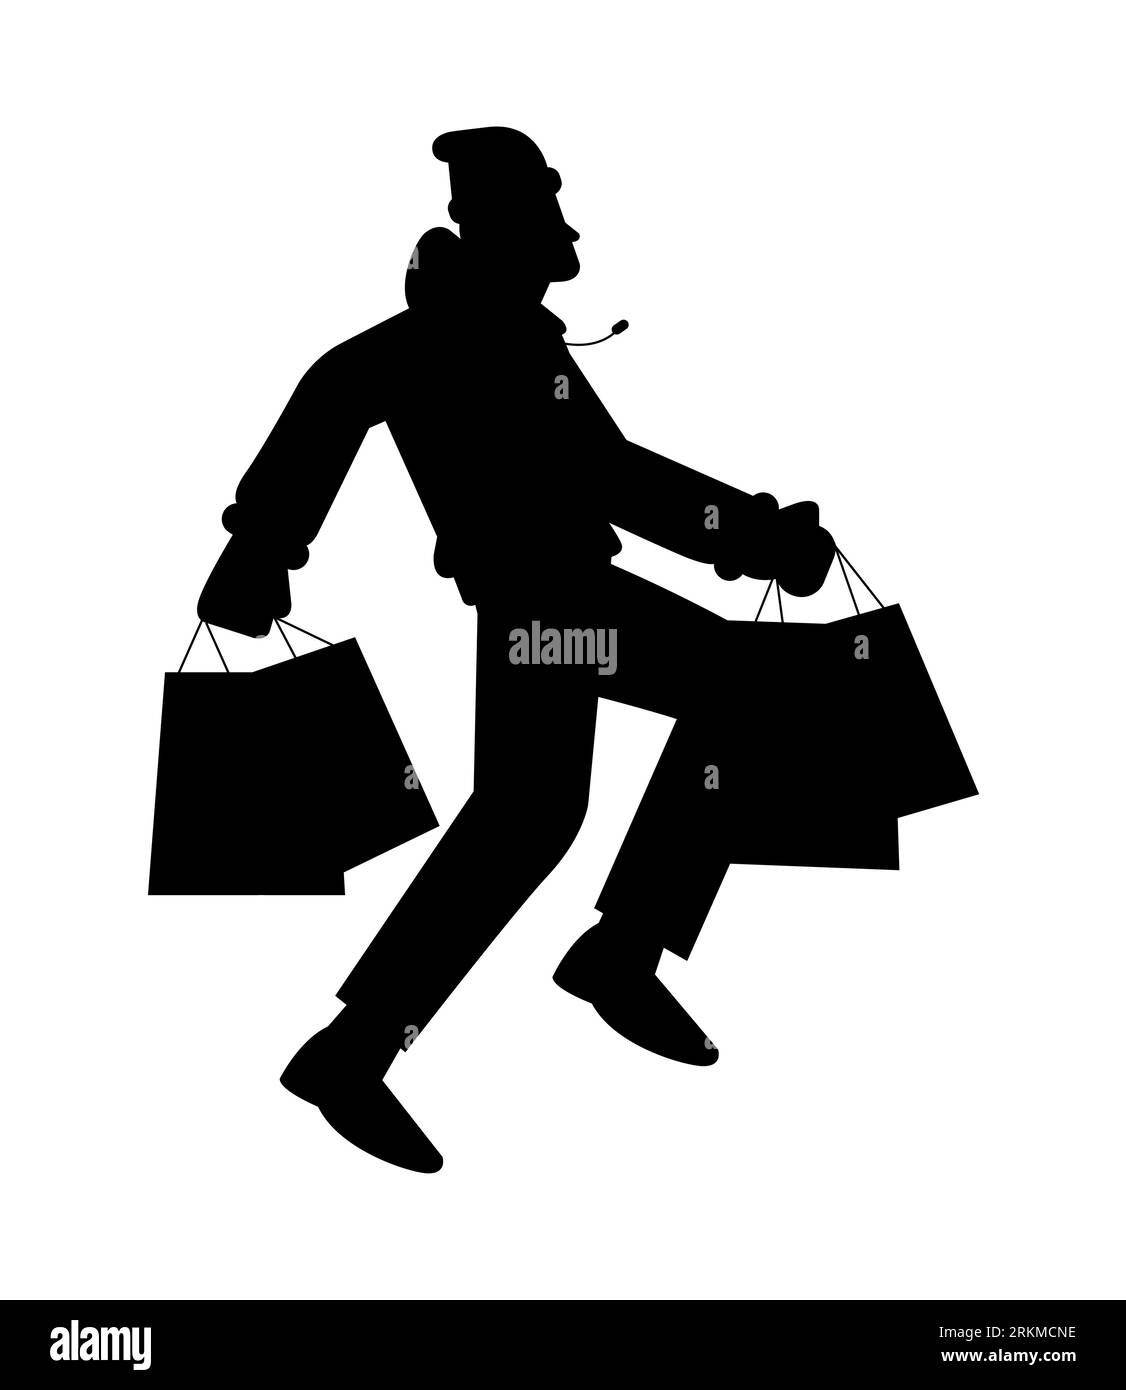 Photo du corps entier d'un jeune homme tenant des sacs à provisions, silhouette noire d'un homme portant des sacs à provisions dans ses mains, vecteur isolé sur blanc Illustration de Vecteur